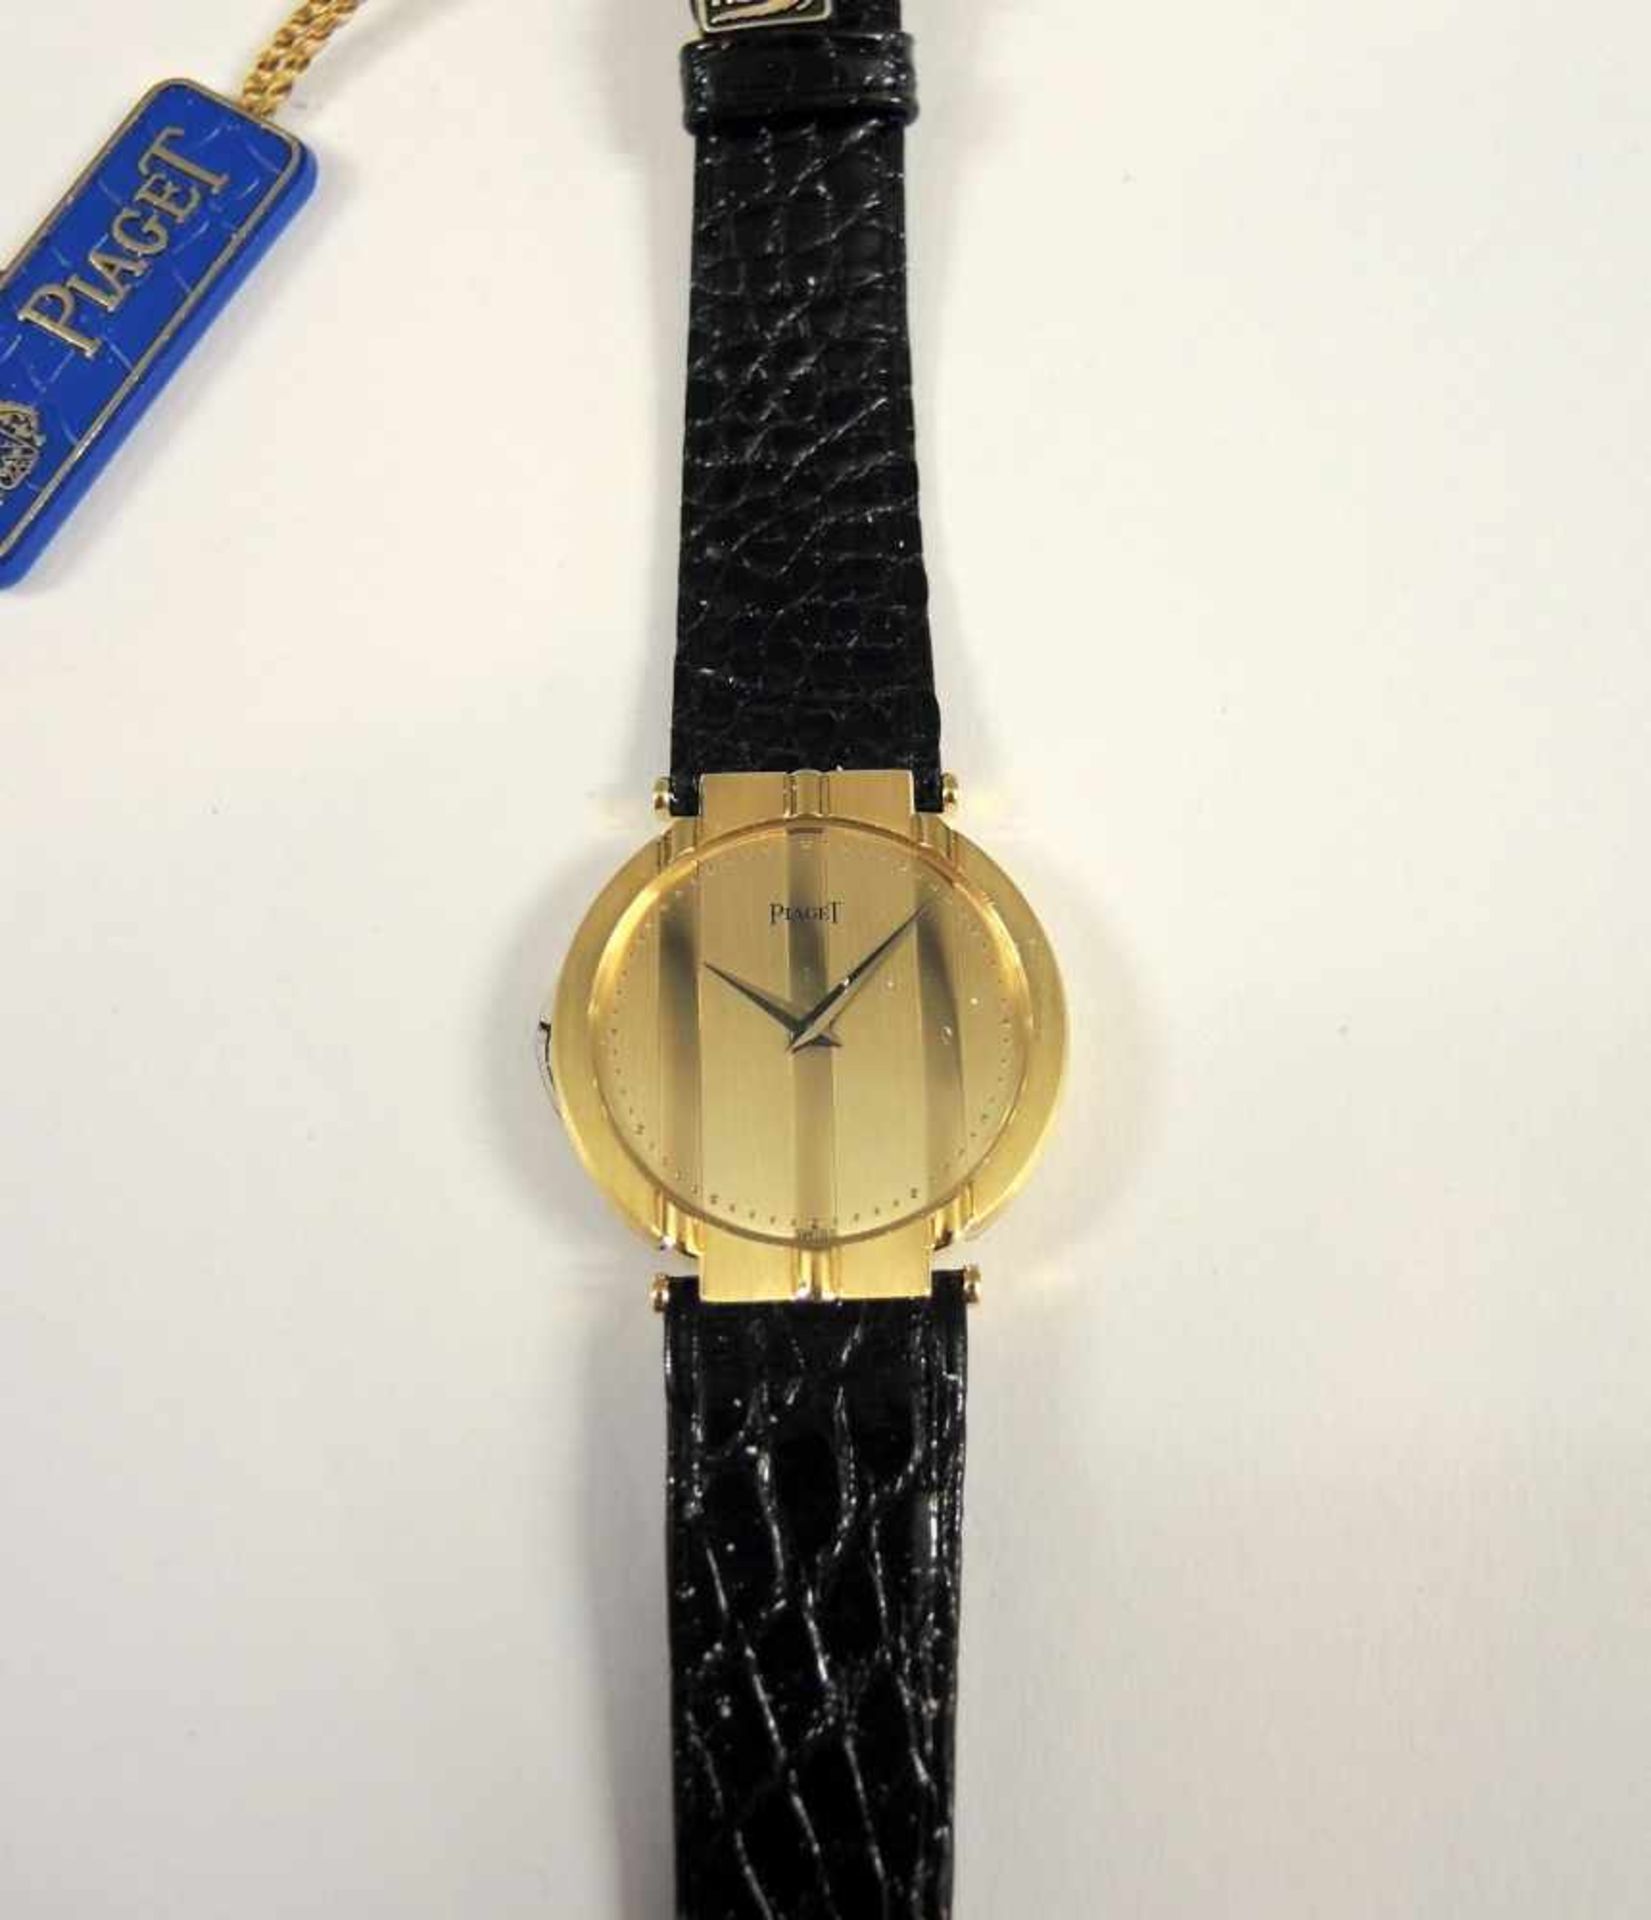 Piaget, Armbanduhr18 K. Gelbgold, mit Goldschließe und schwarzem Lederband. Quartz, in neuwertigem